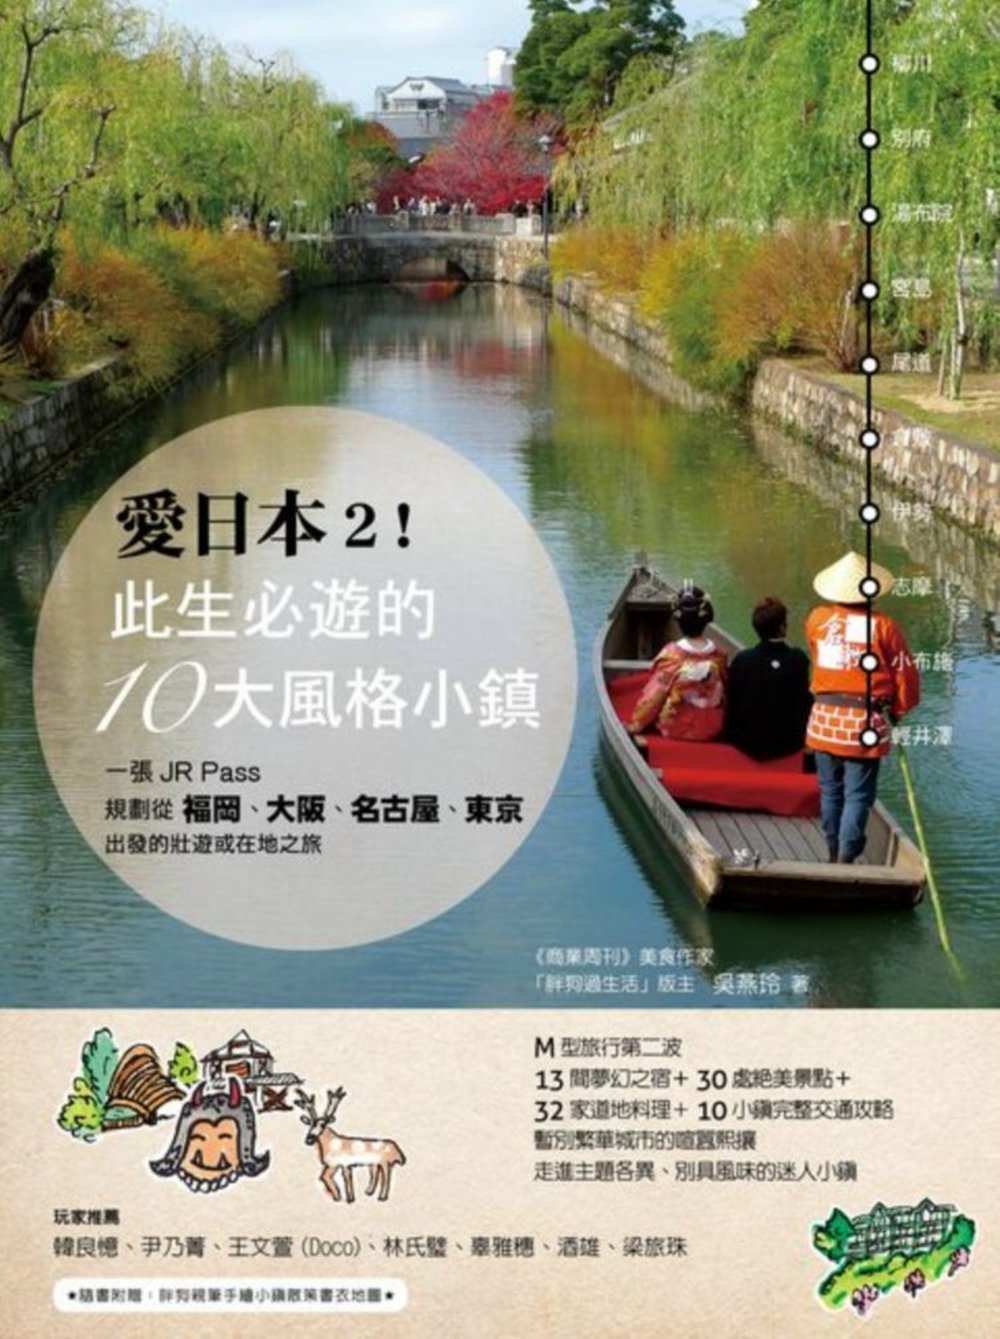 愛日本2！此生必遊的10大風格小鎮：一張JR Pass，規劃從福岡、大阪、名古屋、東京出發的壯遊或在地之旅（附：小鎮散策書衣地圖）